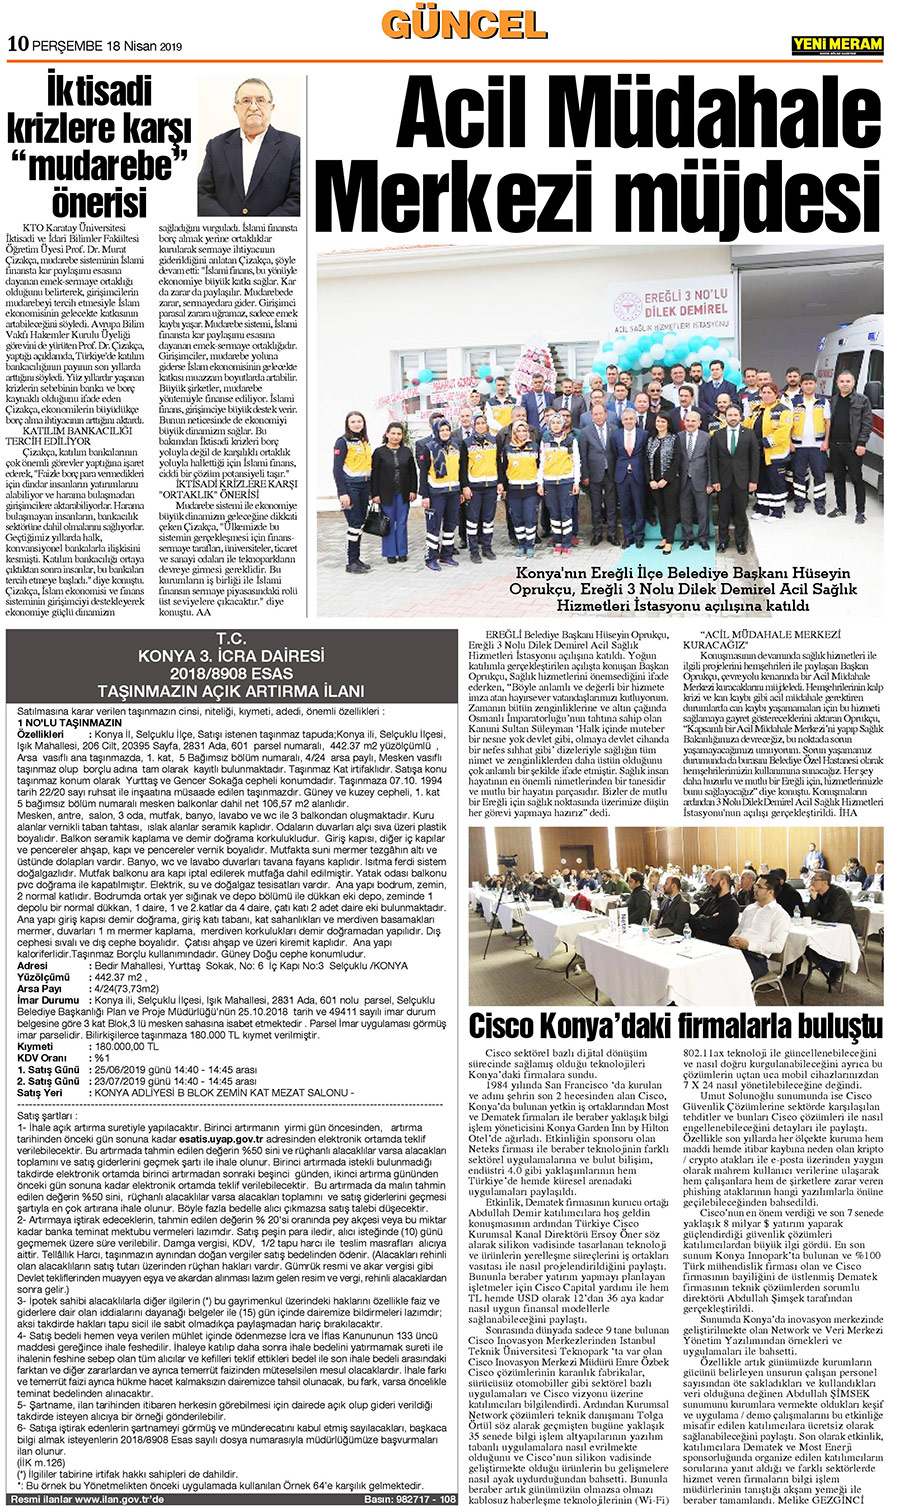 18 Nisan 2019 Yeni Meram Gazetesi